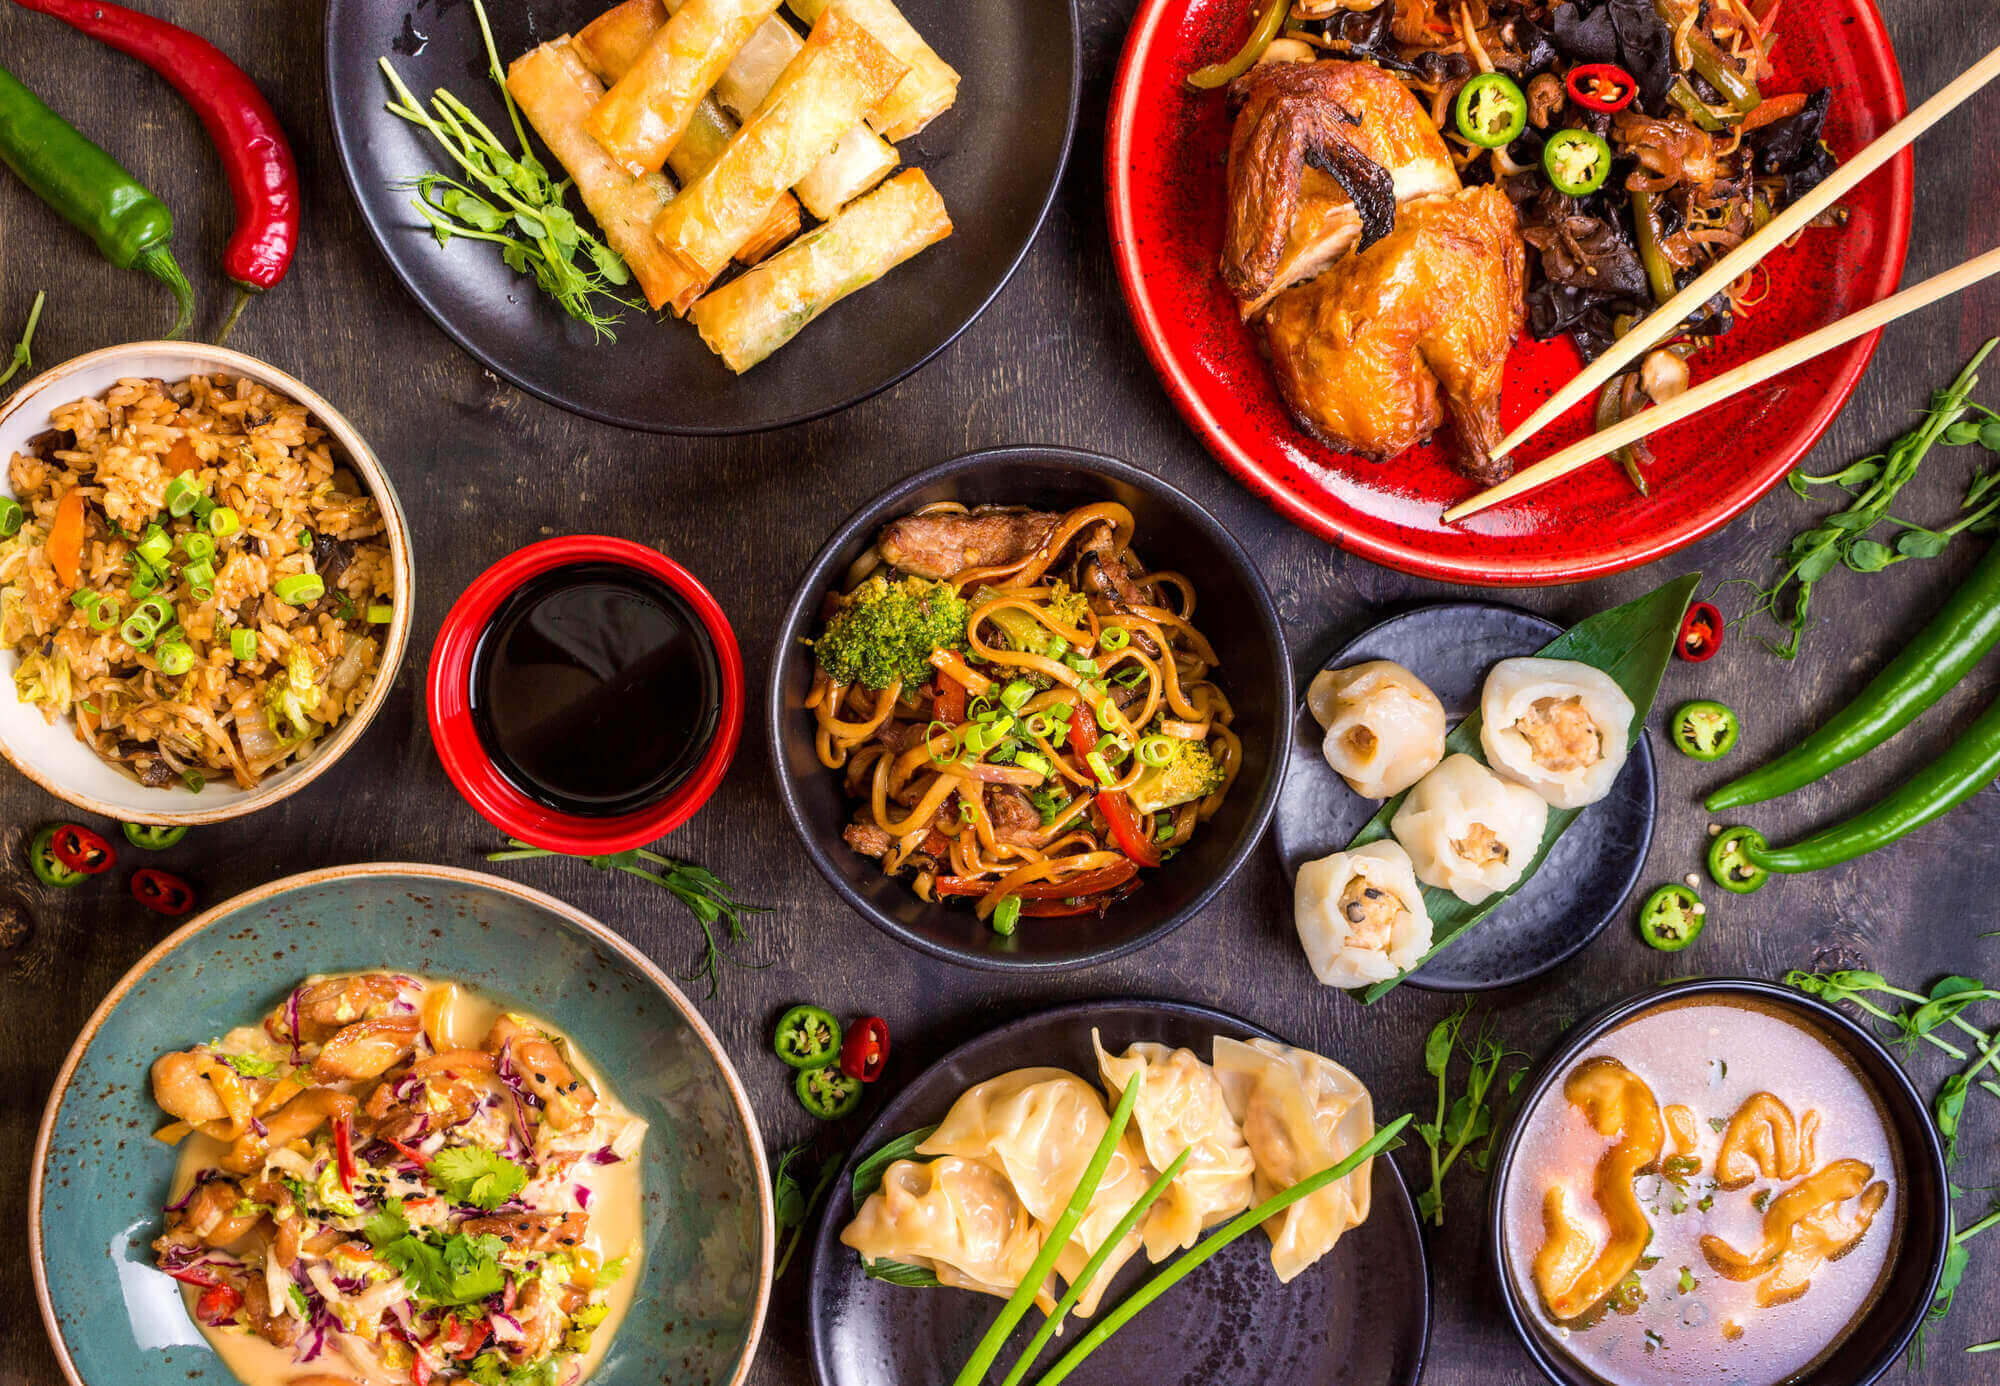 8 curiosidades sobre a culinária da China para você conhecer